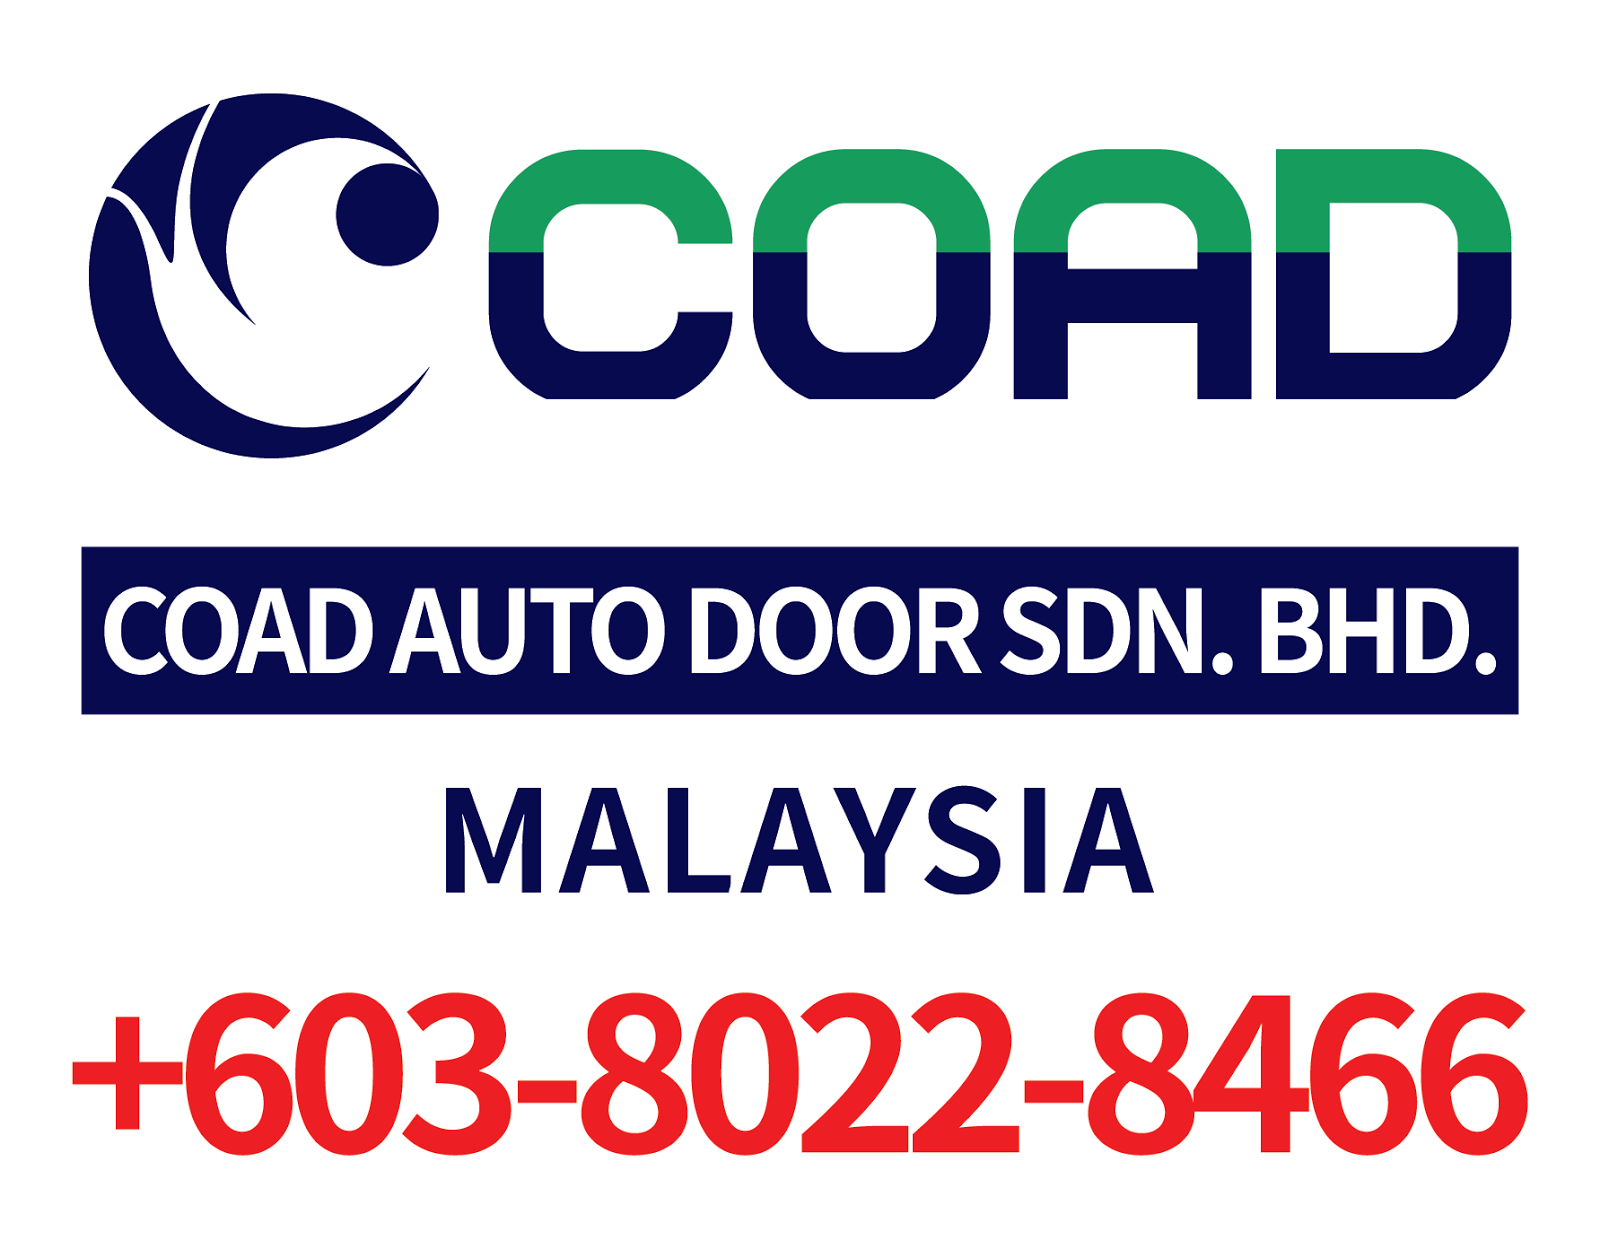 High Speed Door, COAD Auto Door Malaysia, Steel Roller Shutter Doors, Roll Up Door, Price Rapid Door